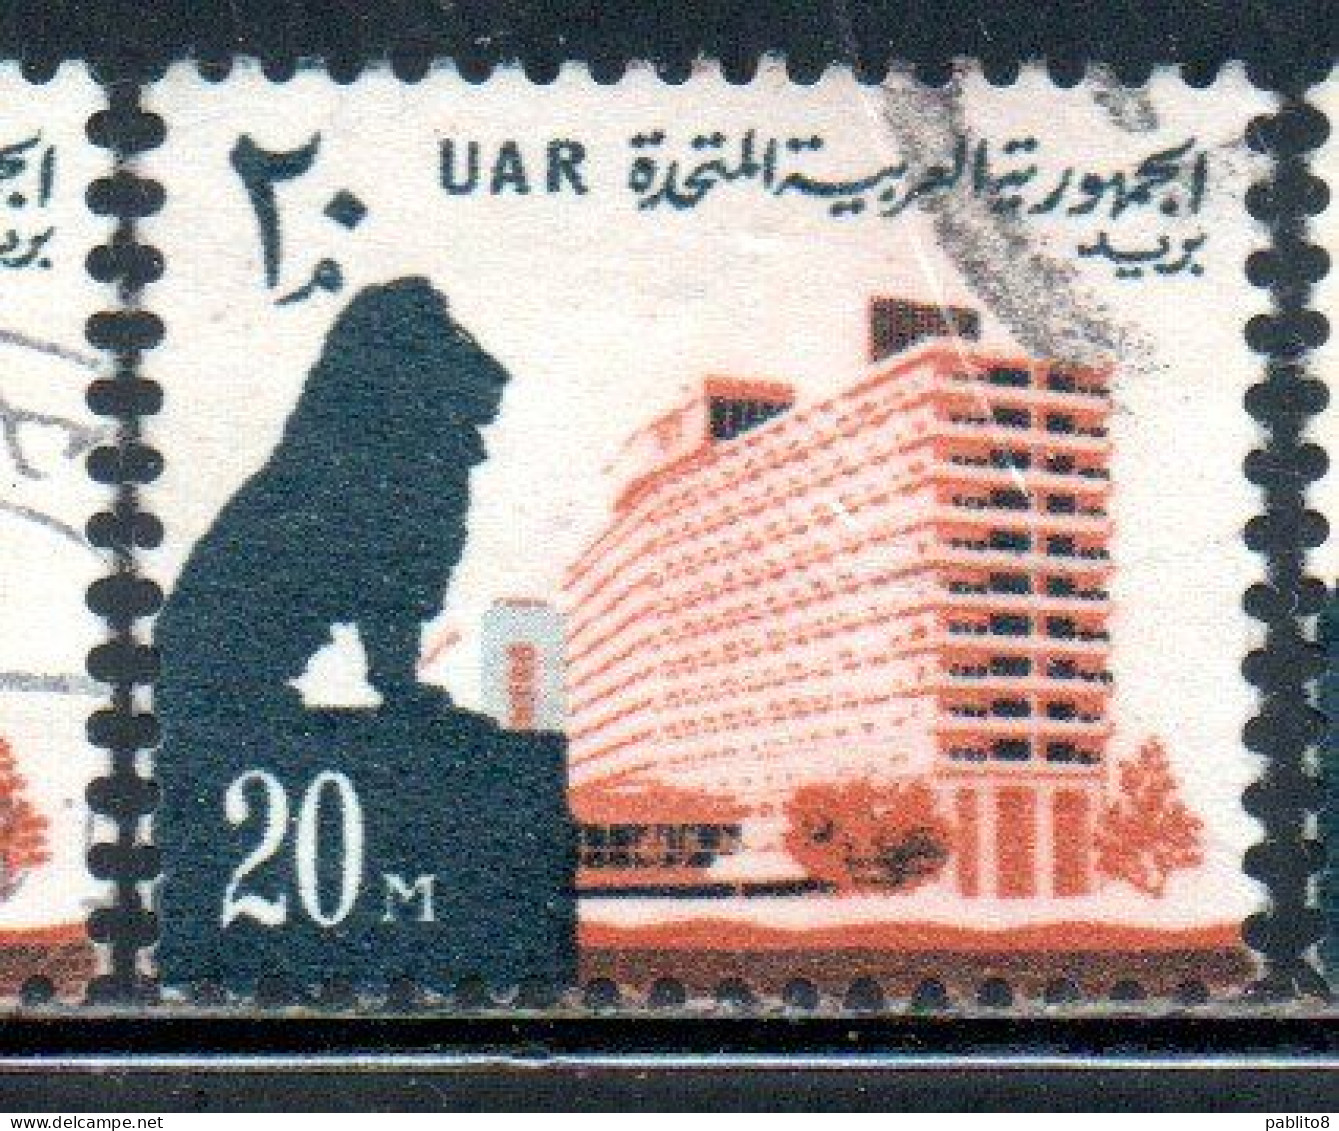 UAR EGYPT EGITTO 1964 1967 LION AND NILE HILTON HOTEL 20m USED USATO OBLITERE' - Oblitérés